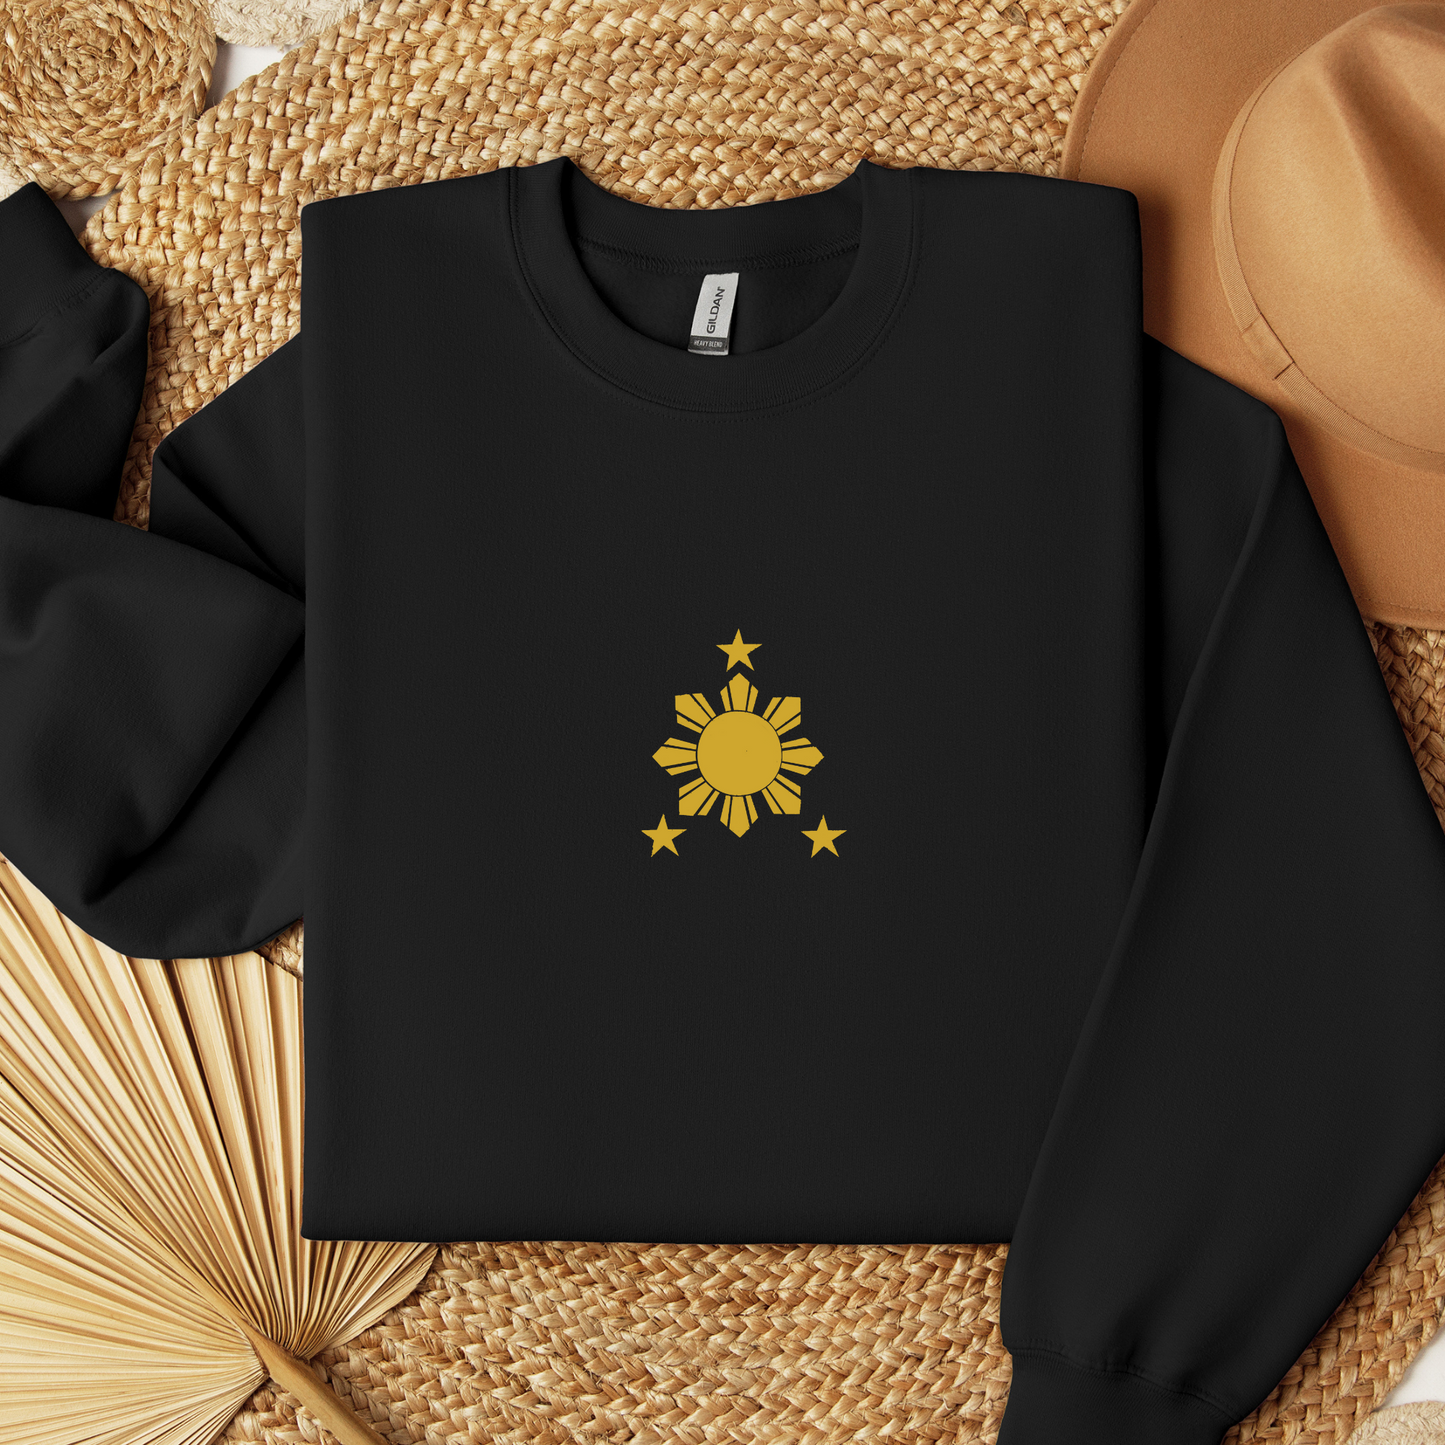 Filipino Sweatshirt Crew Neck Stars and Sun Embroidered Merch